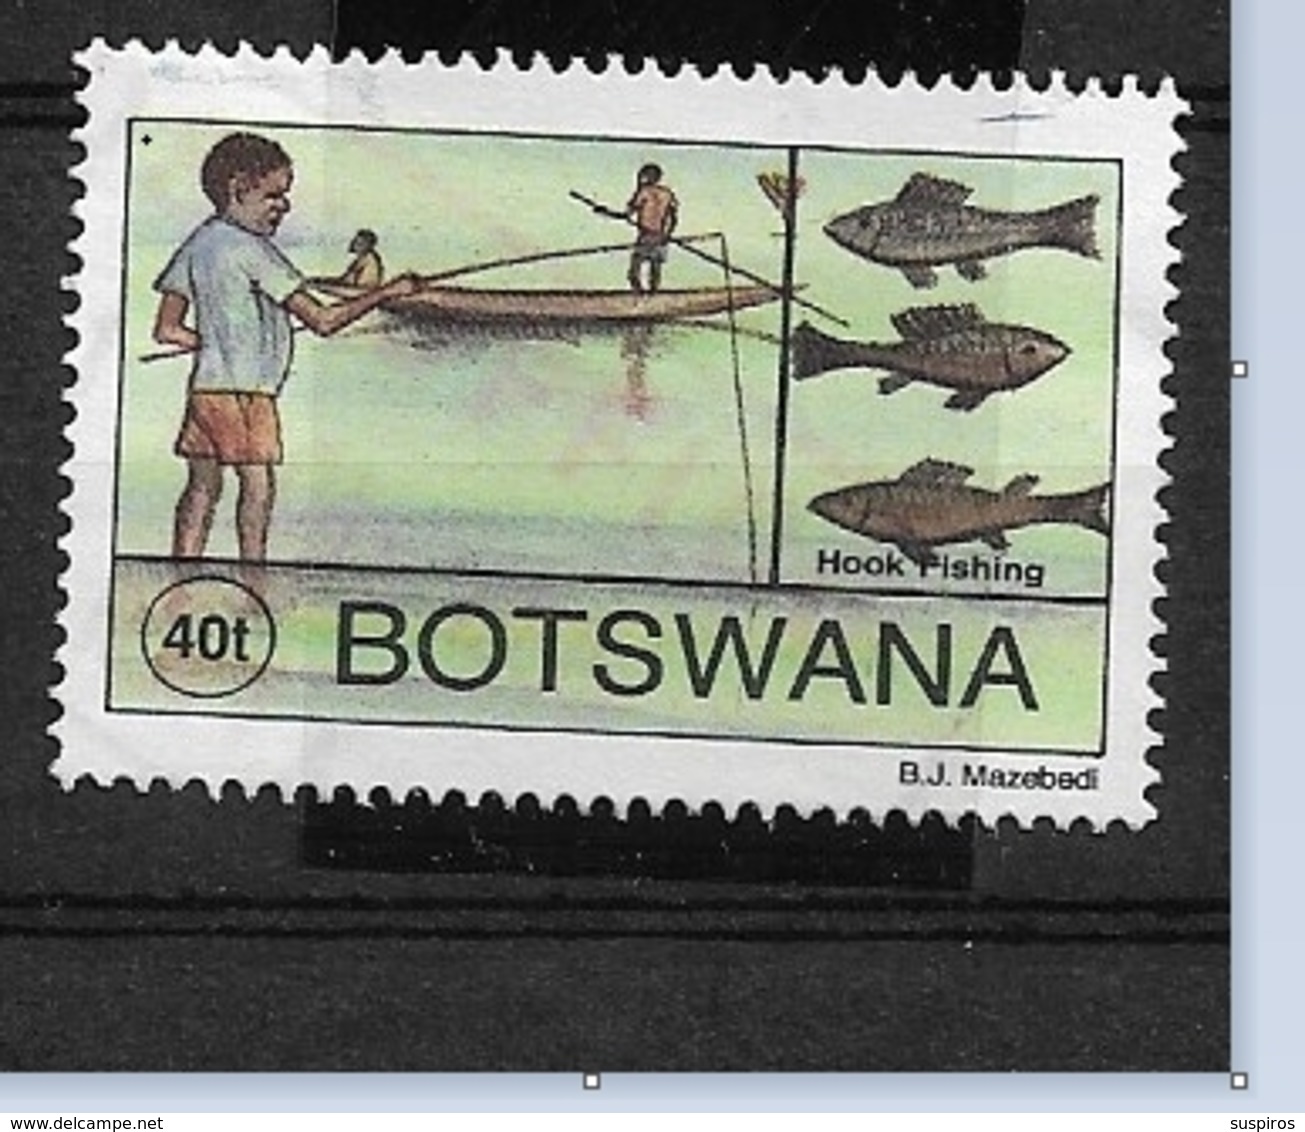 BOTSWANA  1995 Traditional Fishing   Hook Net NW  Used - Botswana (1966-...)